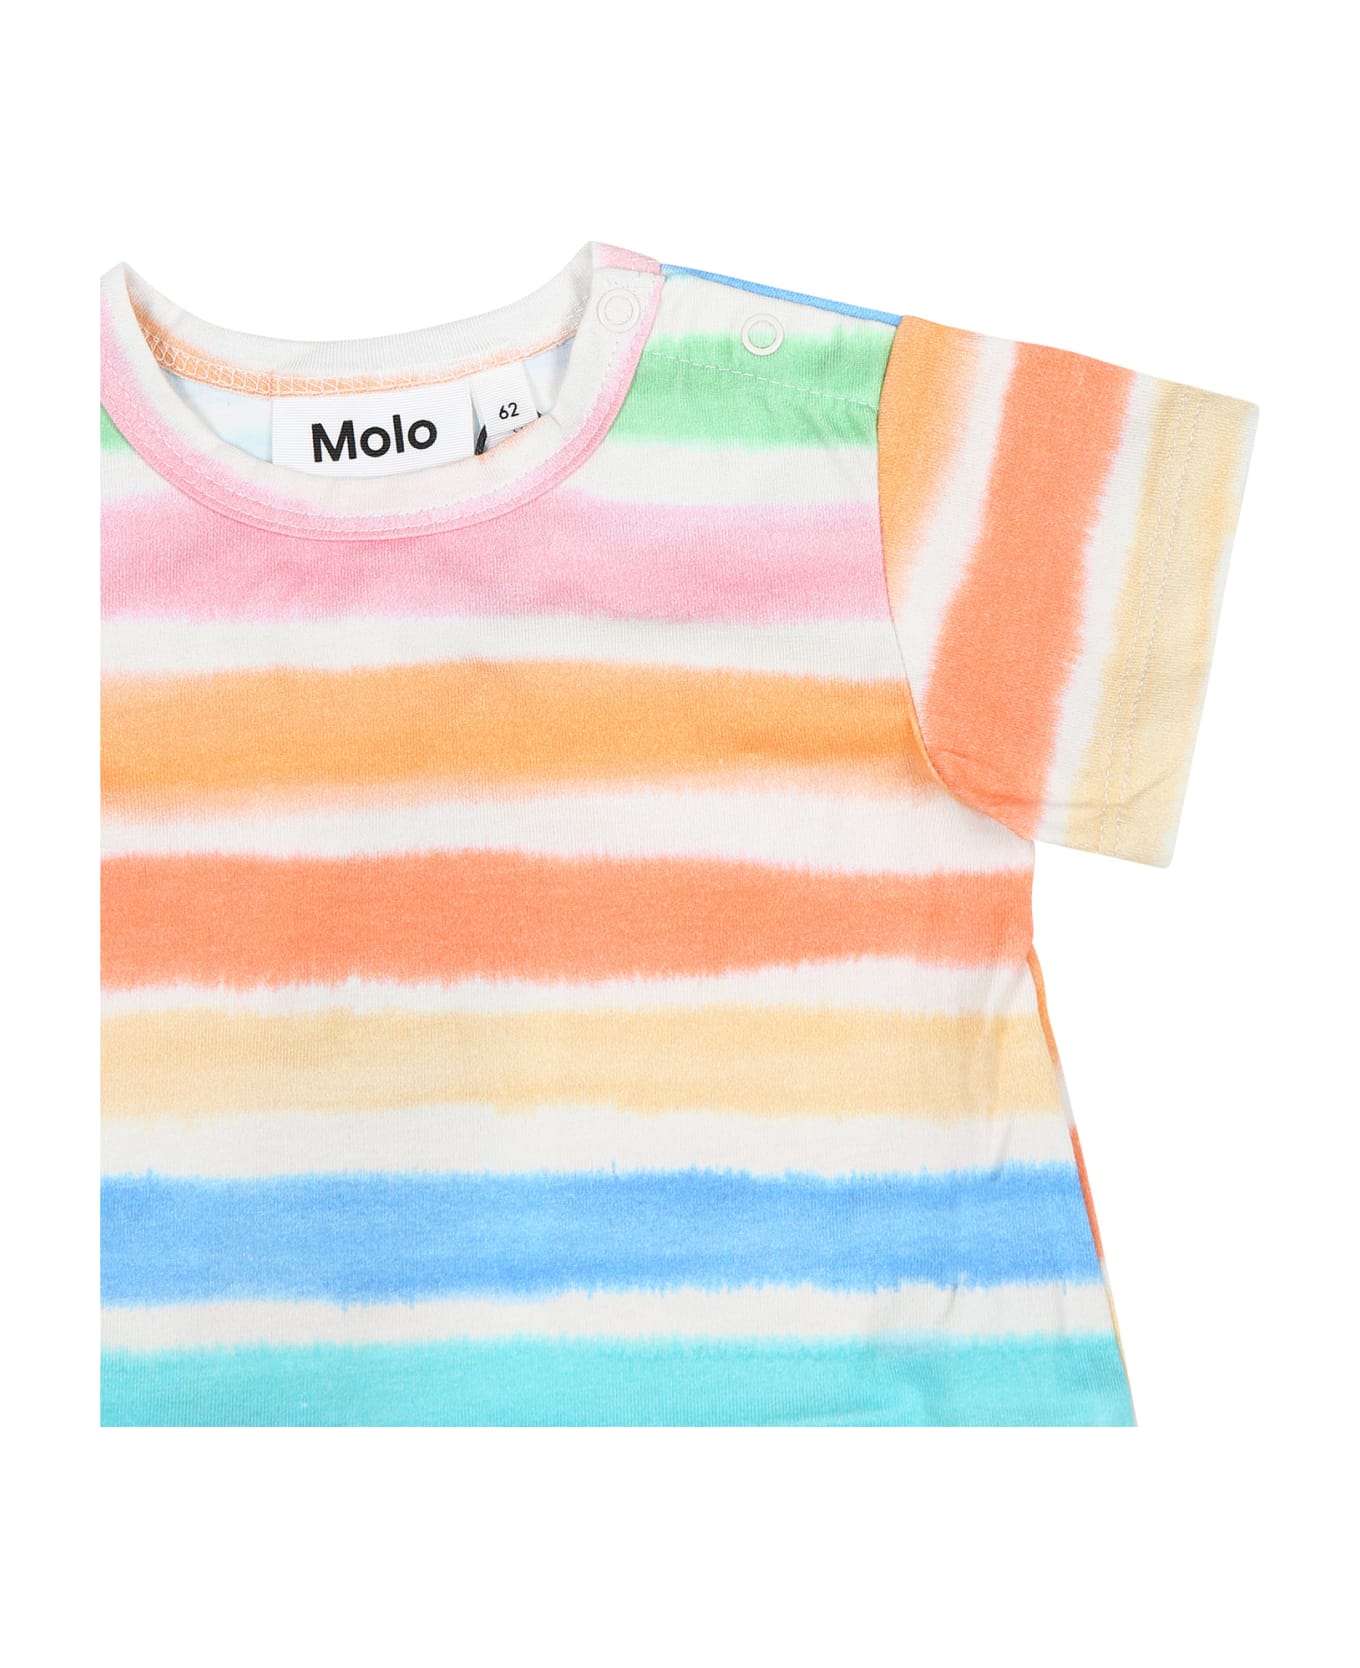 Molo Multicolor Romper For Baby Kids - Multicolor